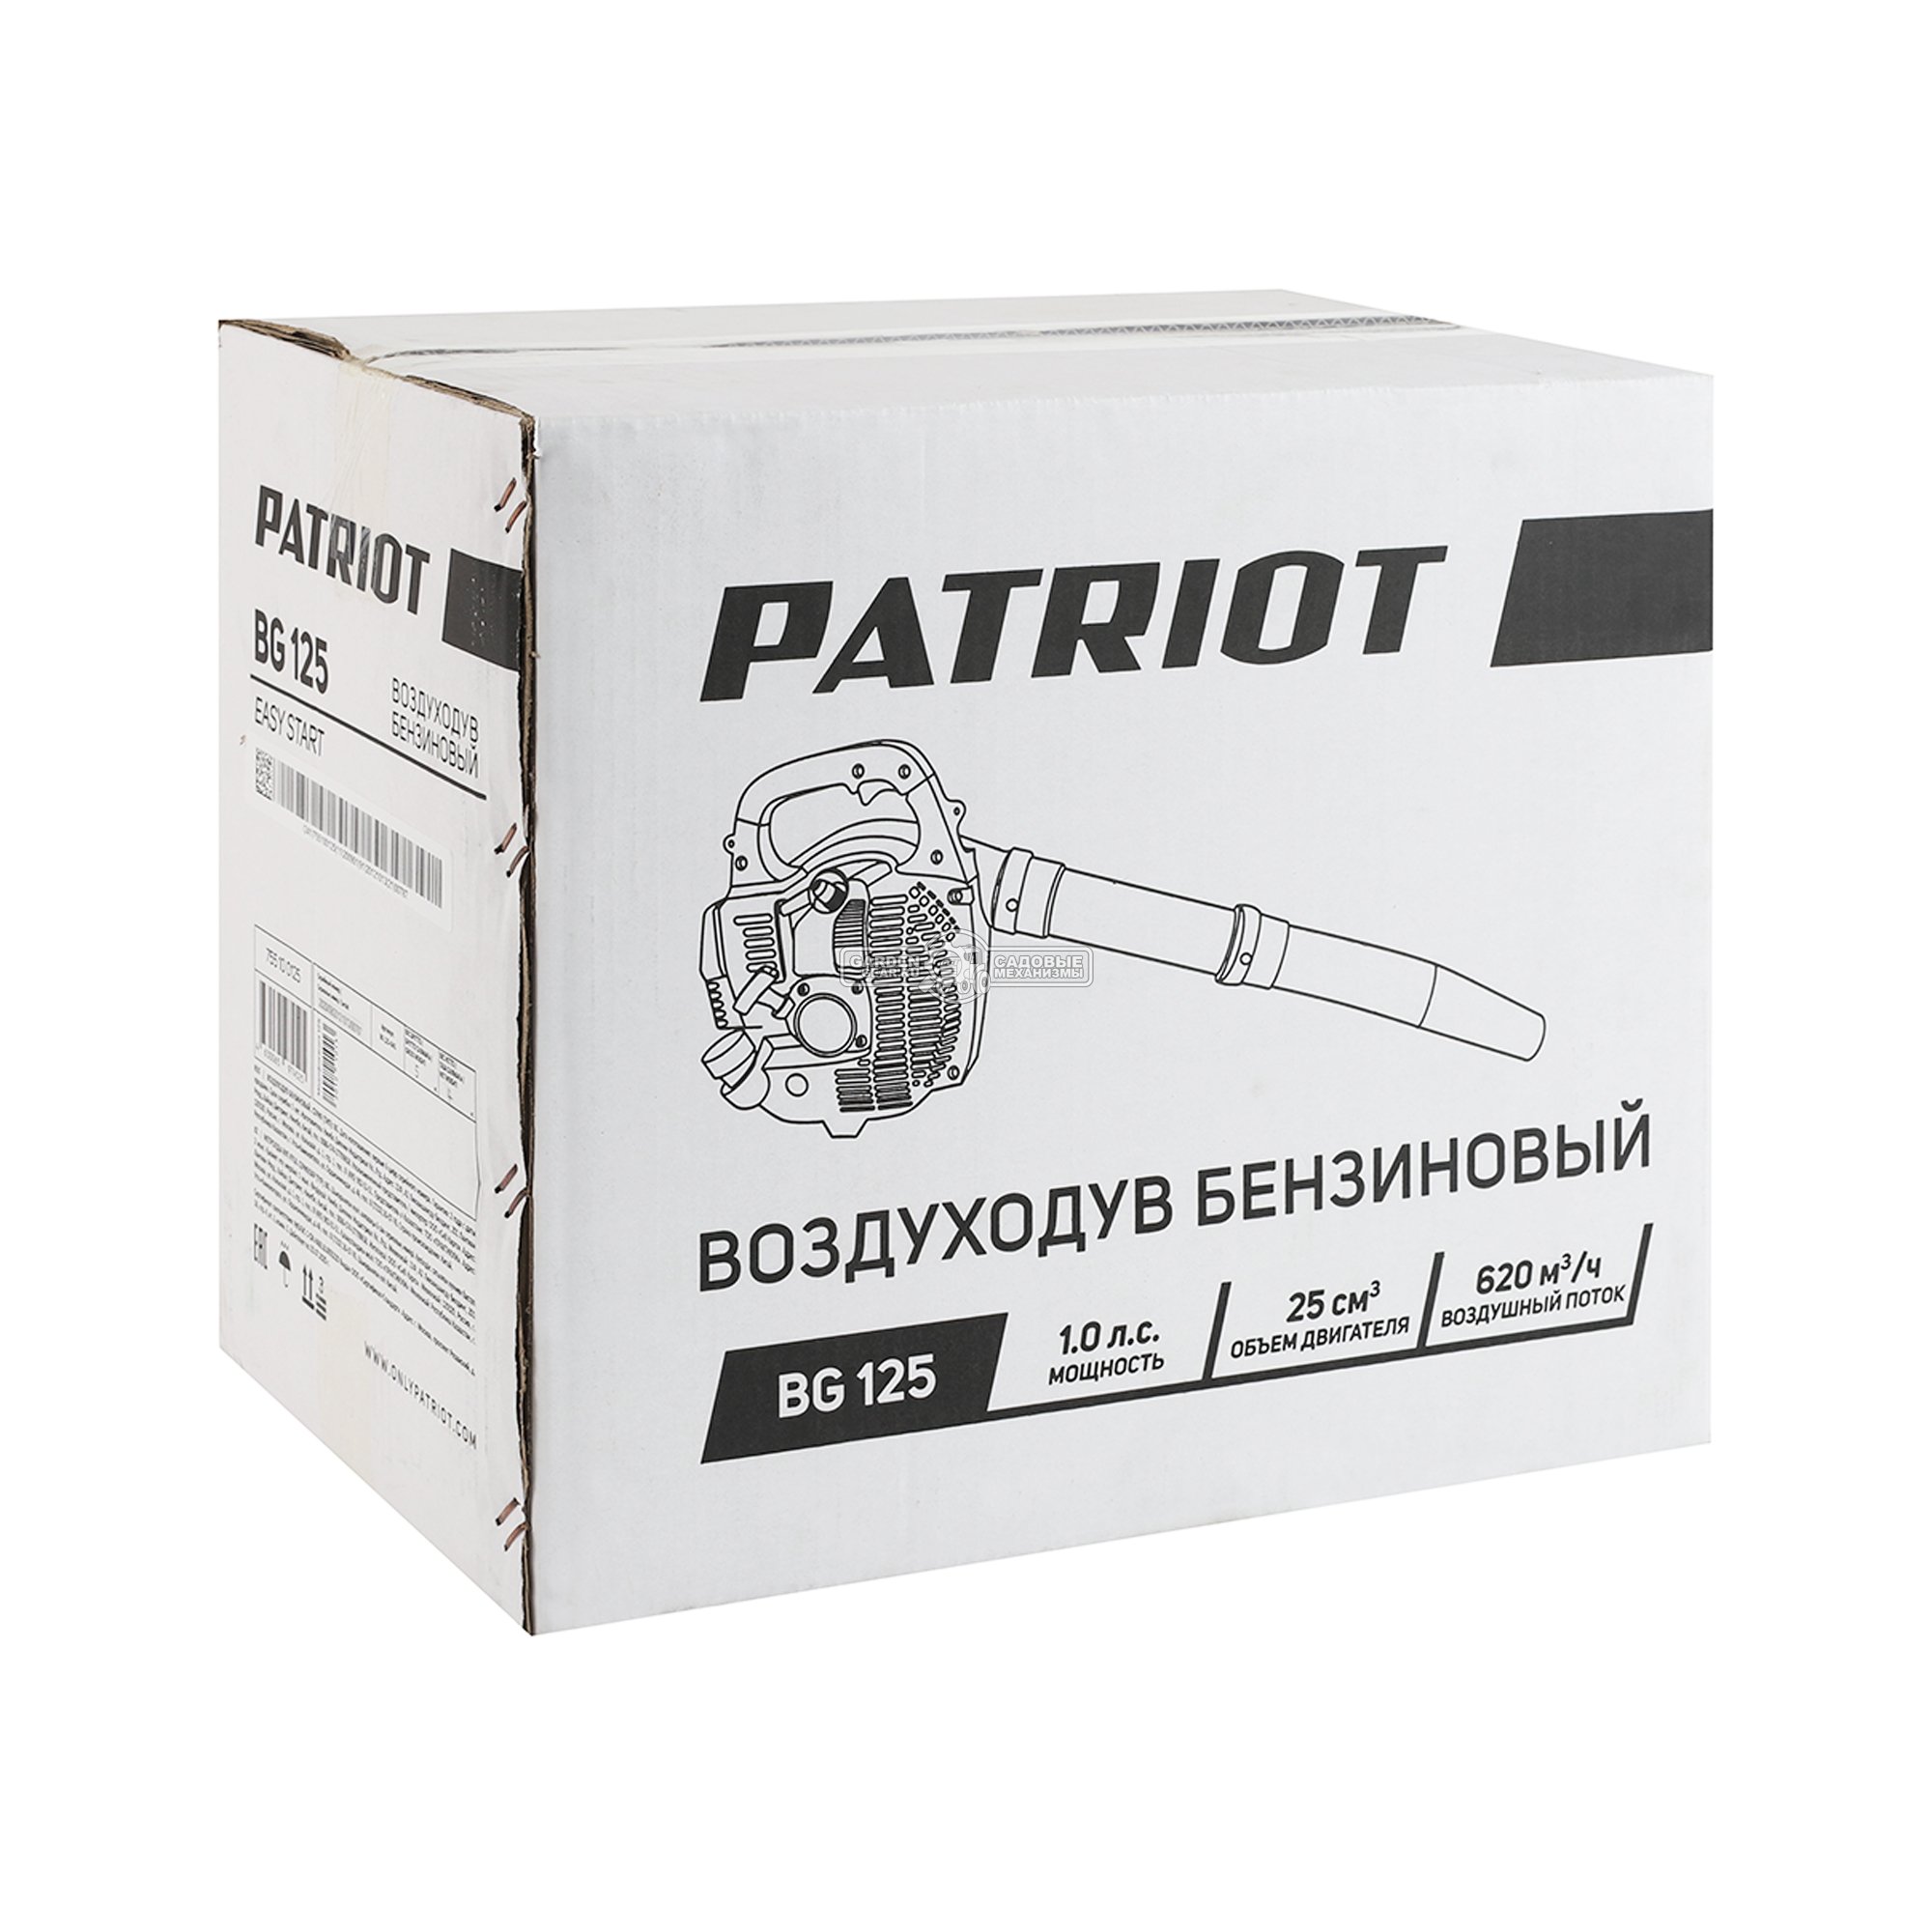 Воздуходувка бензиновая Patriot BG125 (PRC, 25 куб.см., 1,0 л.с., 620  м3/ч, 8 кг)